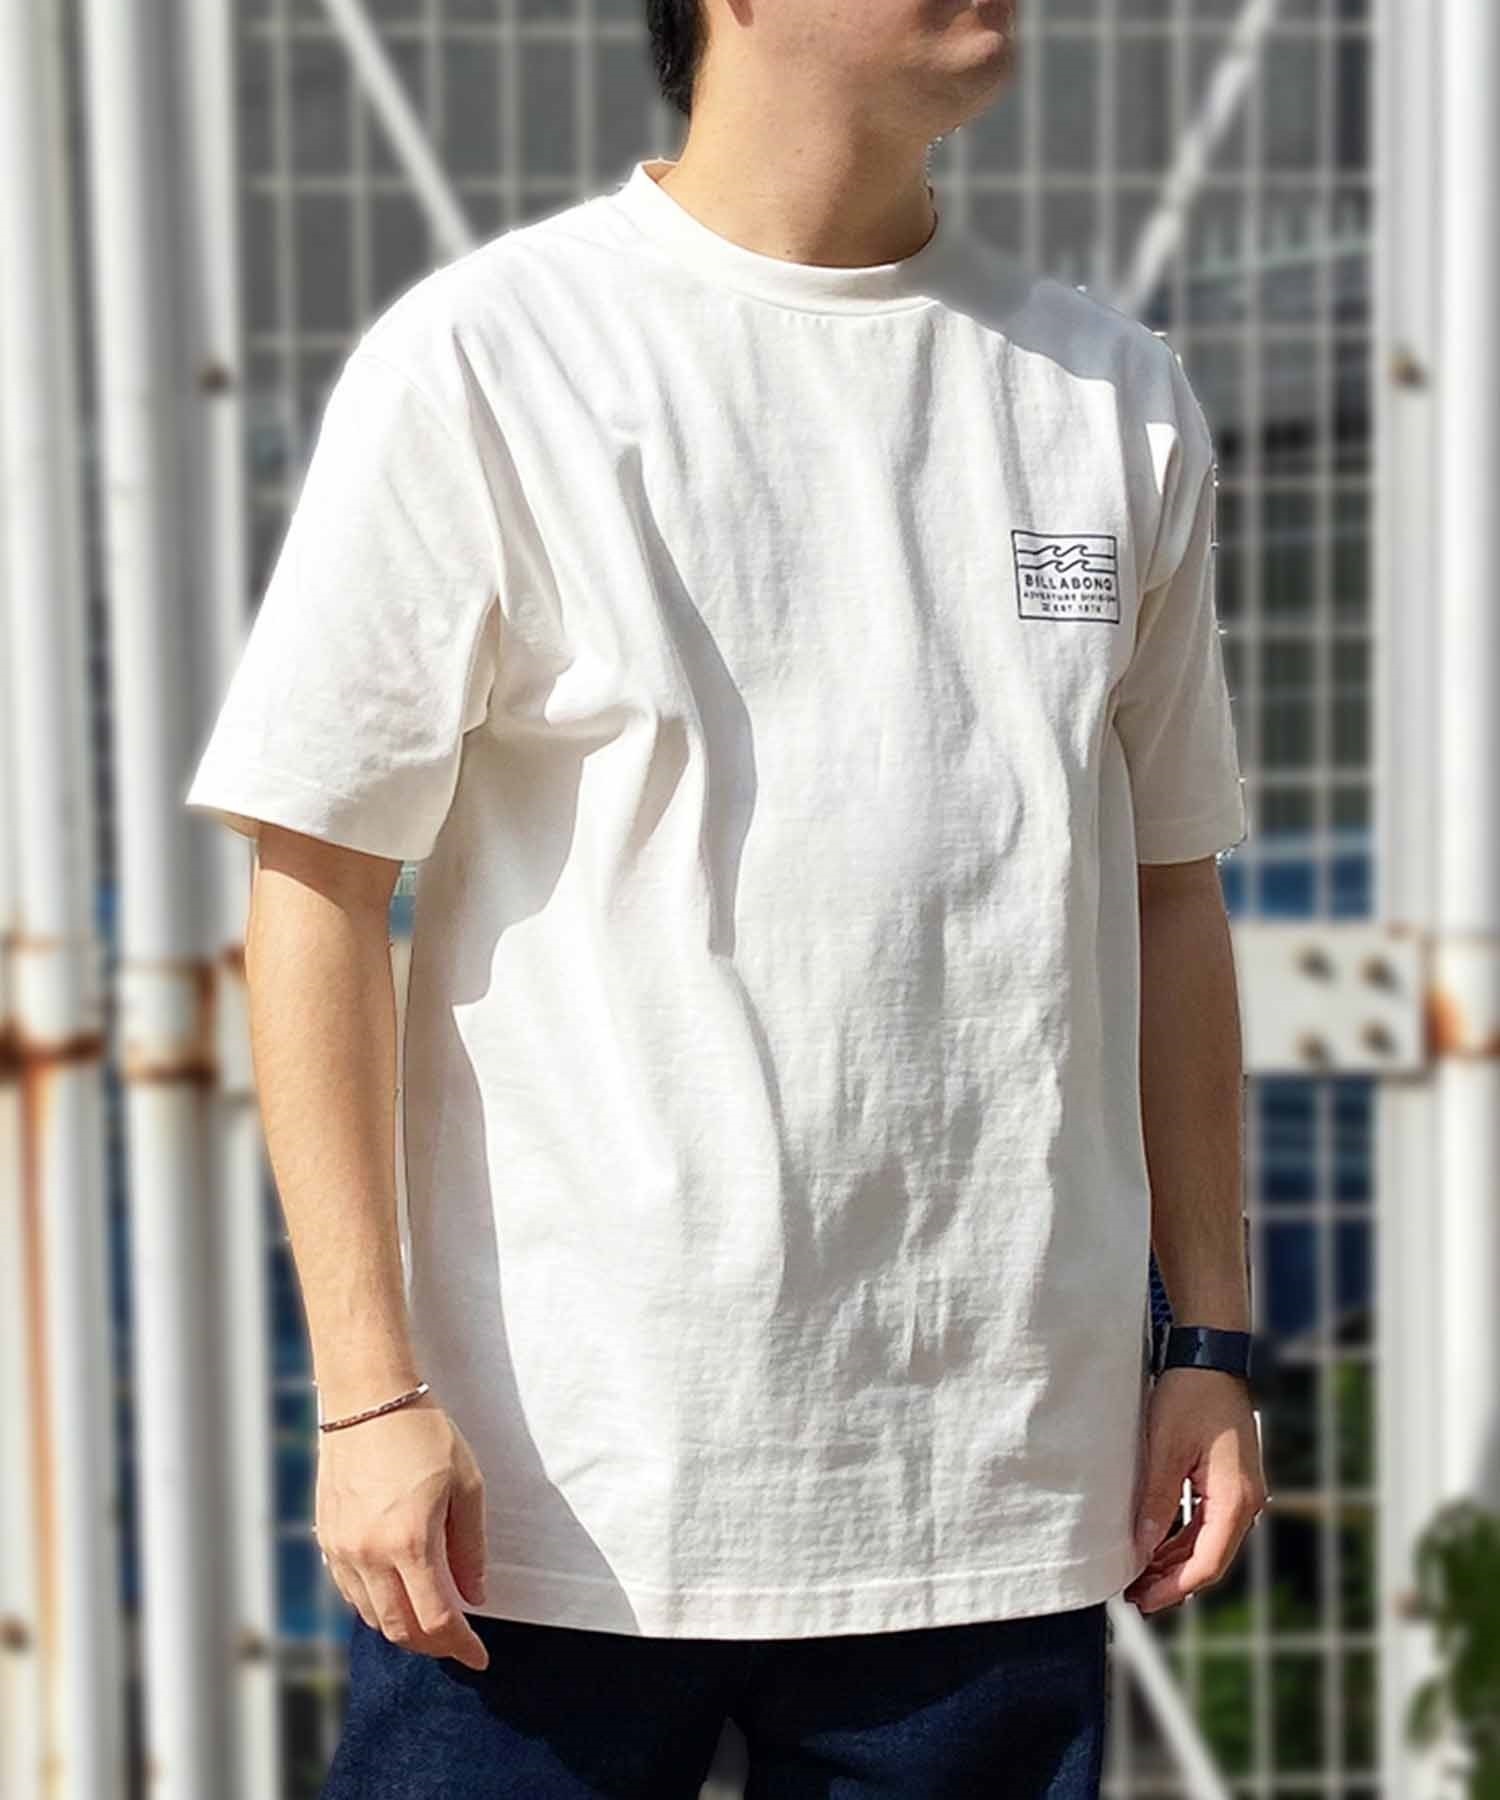 【マトメガイ対象】BILLABONG ビラボン メンズ バックプリントTシャツ ロゴT 半袖 BE011-214(CRM-M)